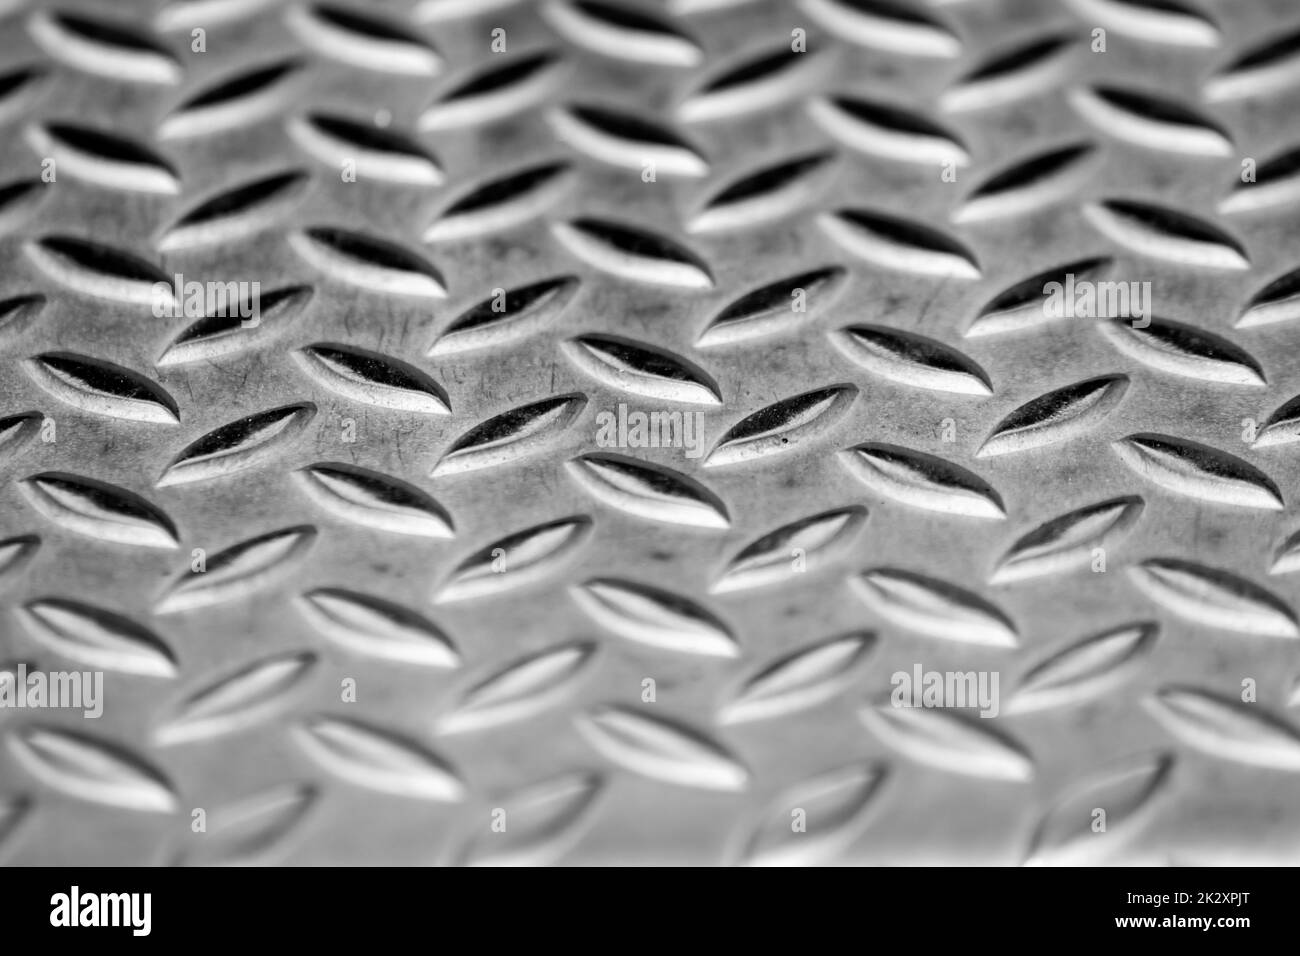 Die massive Oberfläche aus Diamant-Metall zeigt Edelstahlböden in der industriellen Fertigung als Steampunk-Hintergrund für Metalltreppen und schwere Stahlplatten zum Schutz und schwere gepanzerte Militärfahrzeuge Stockfoto